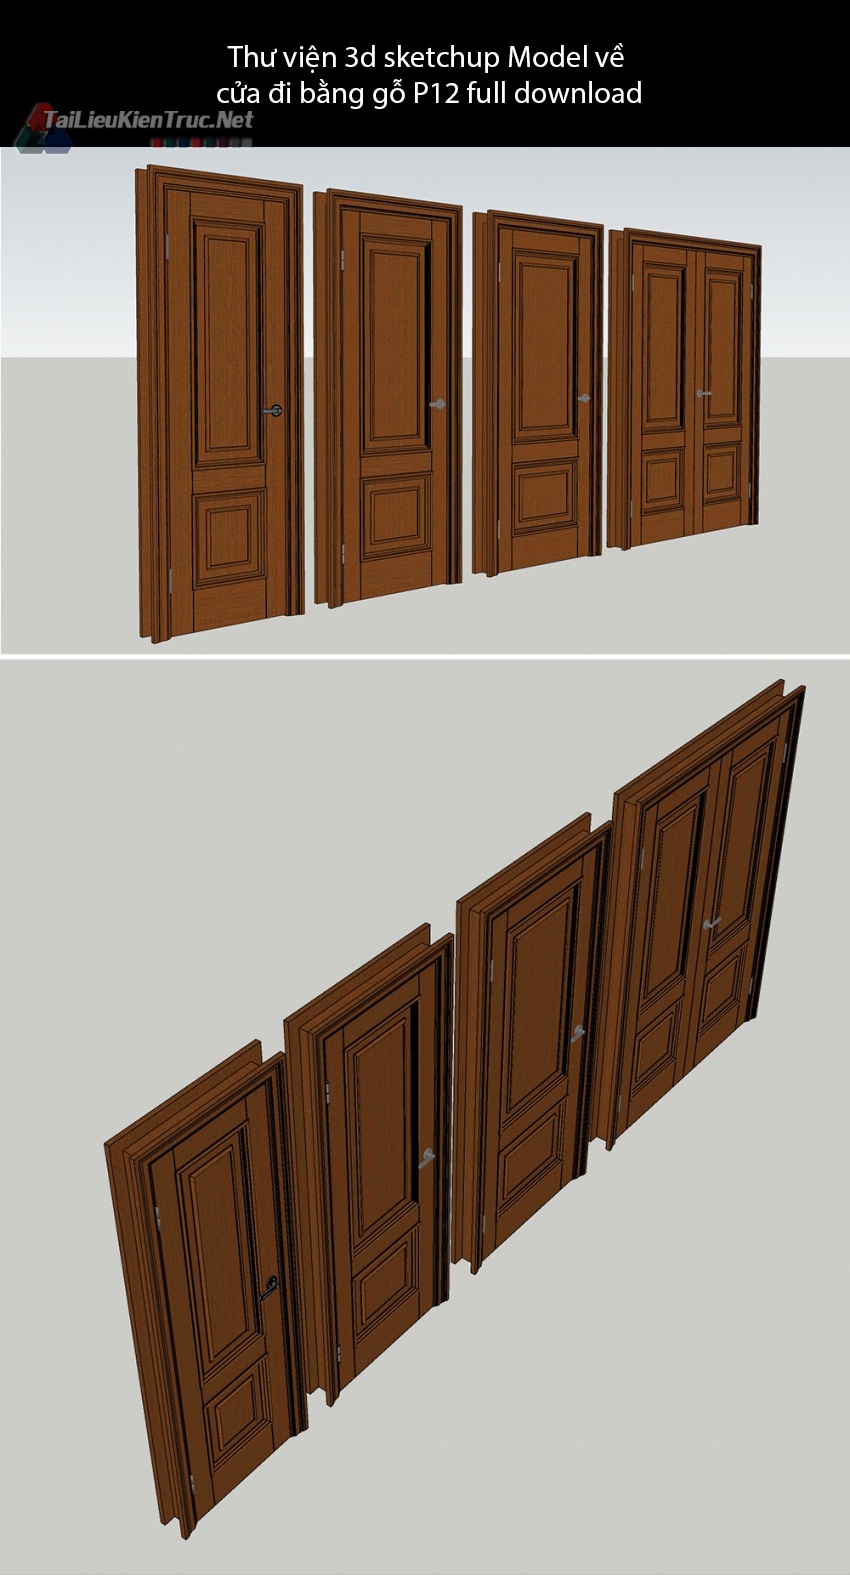 Thư viện 3d sketchup Model về cửa đi bằng gỗ P12 full download